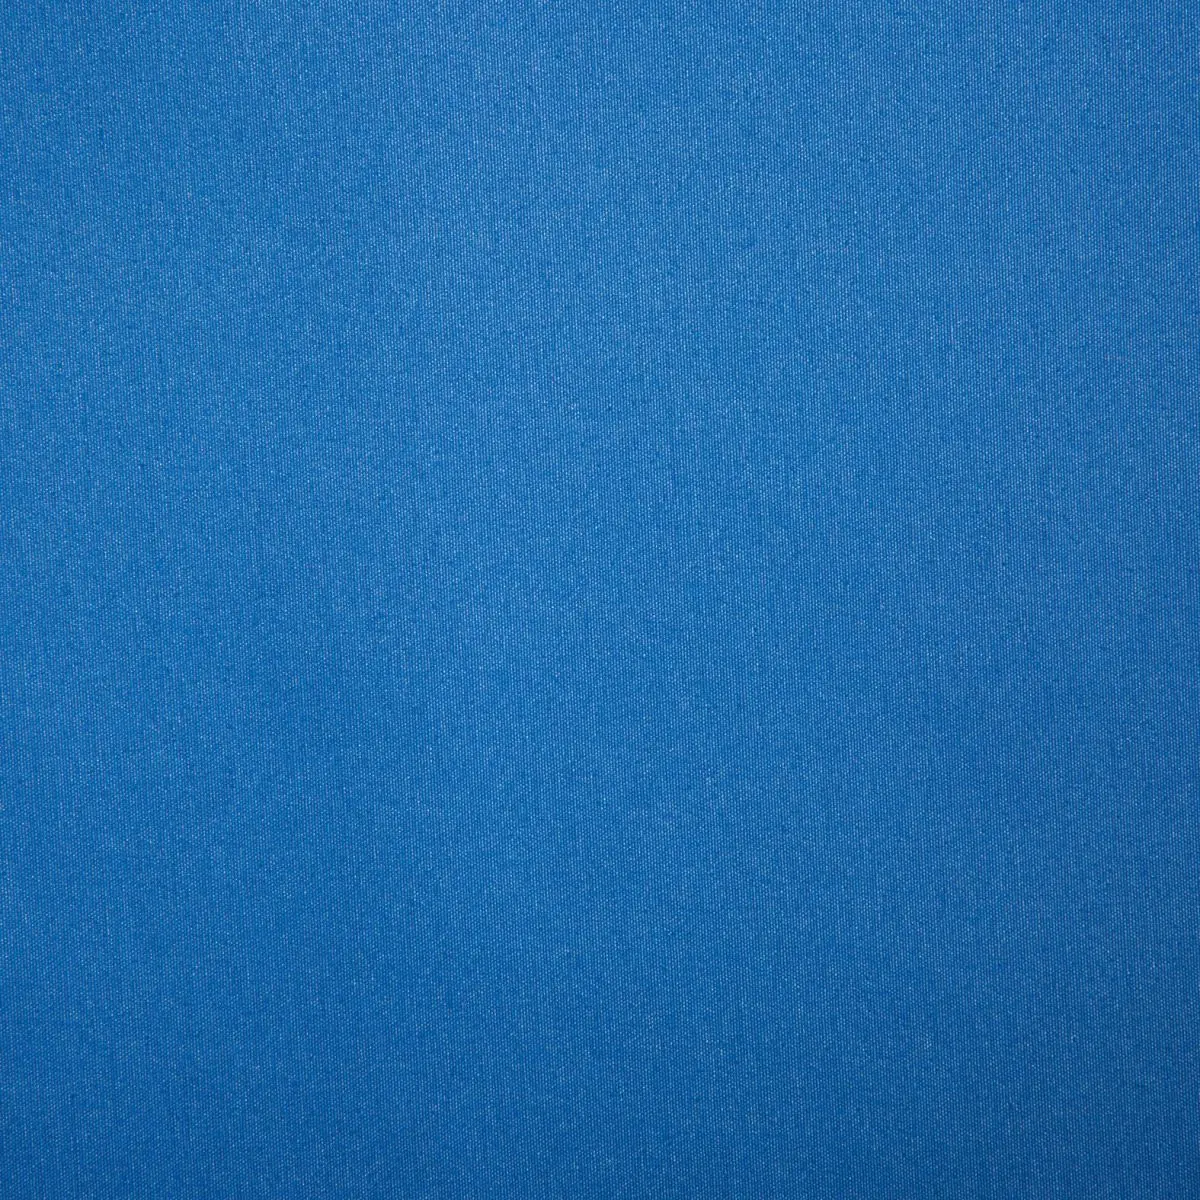 Slnečná strieška Playa - modrá, 200 x 240 cm